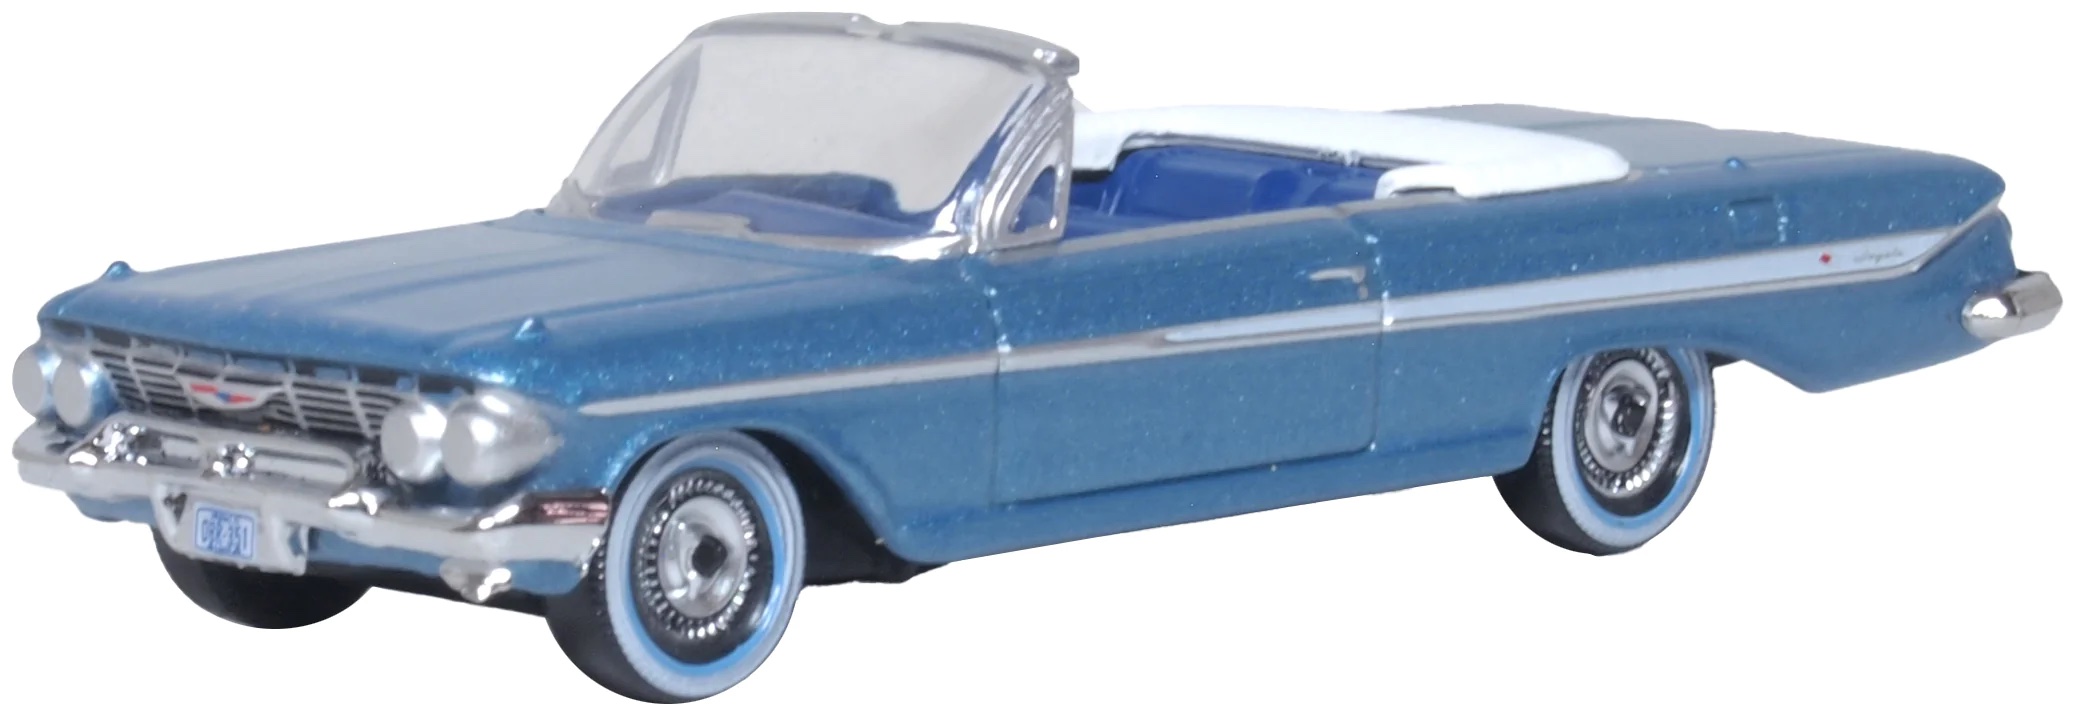 oxford-87CI61006-Chevrolet-Impala-Cabrio-1961-jewel-blue-white